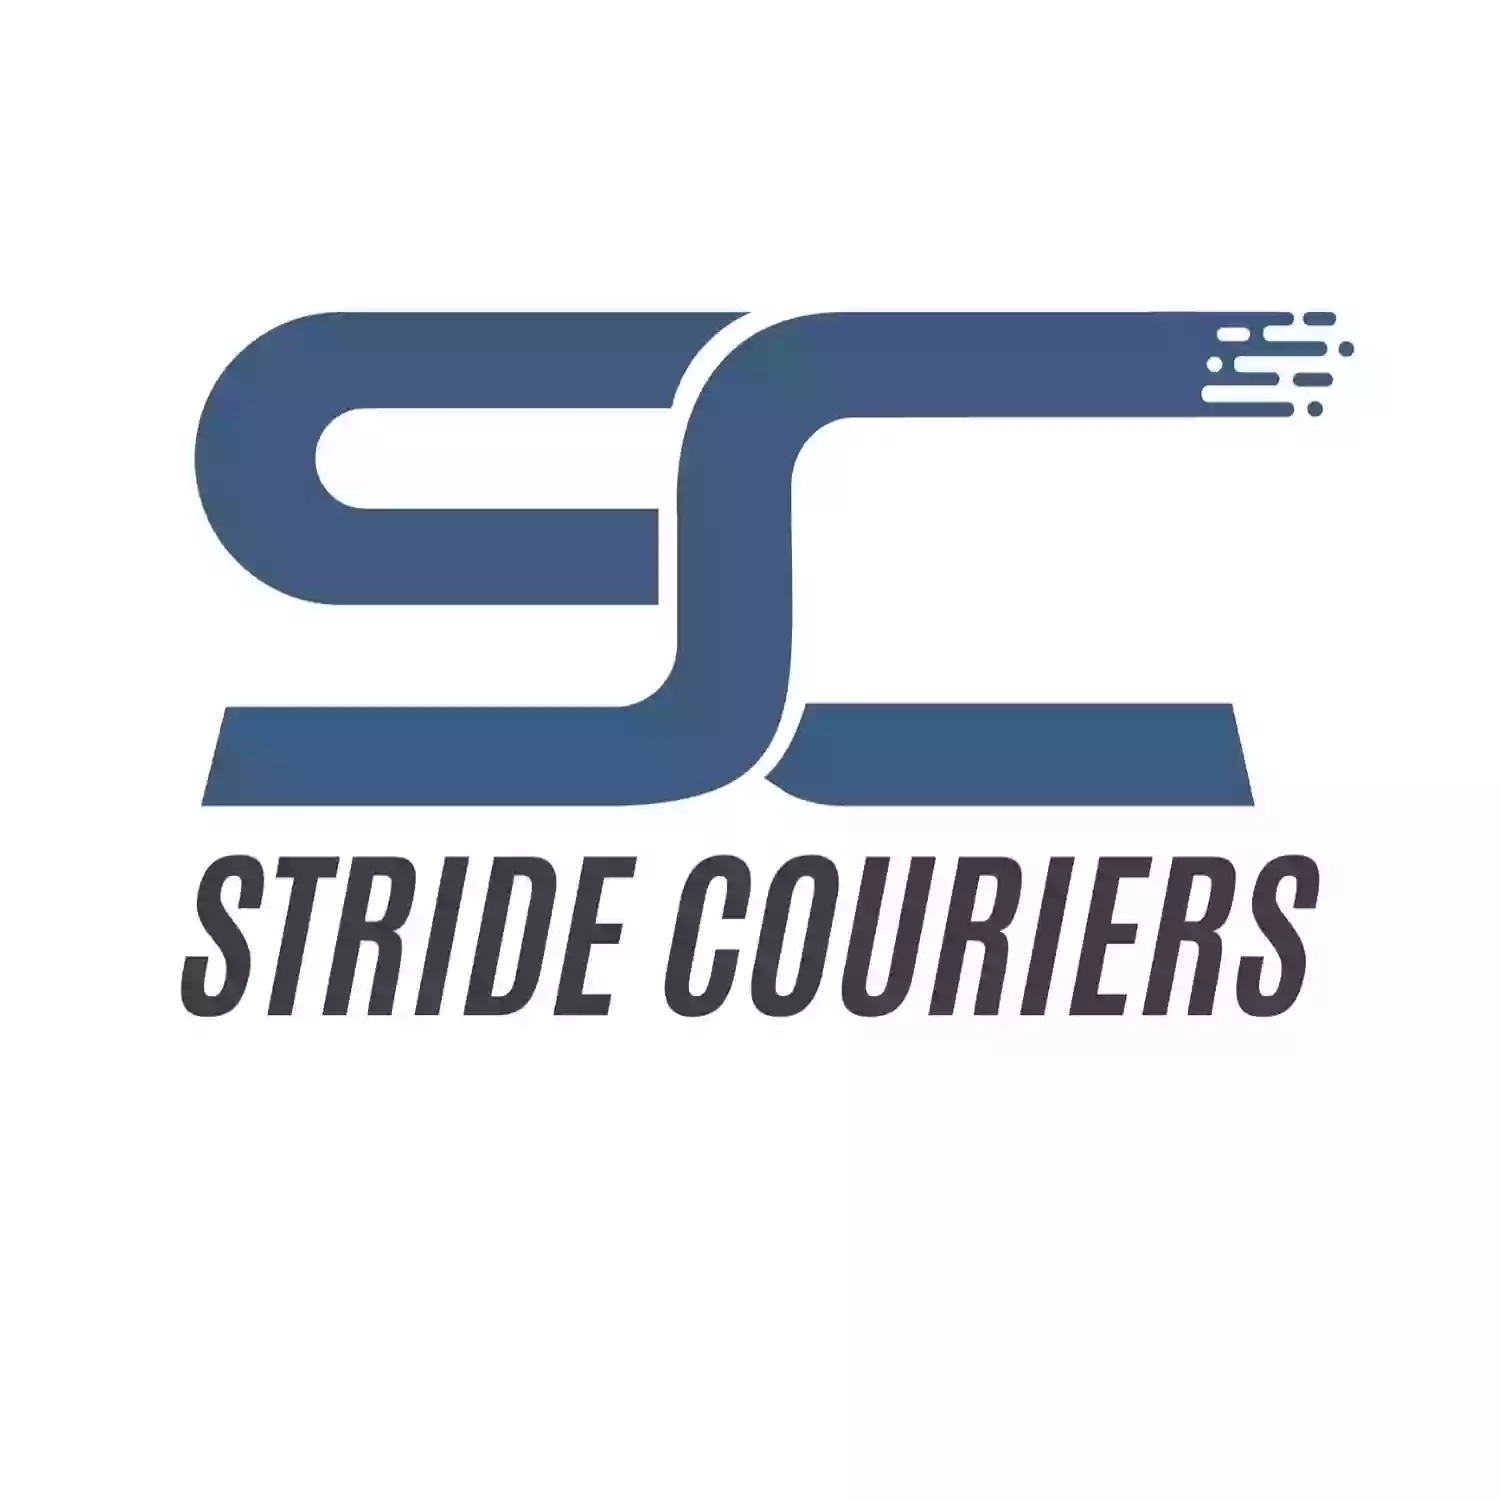 Stride Courier Services Ltd